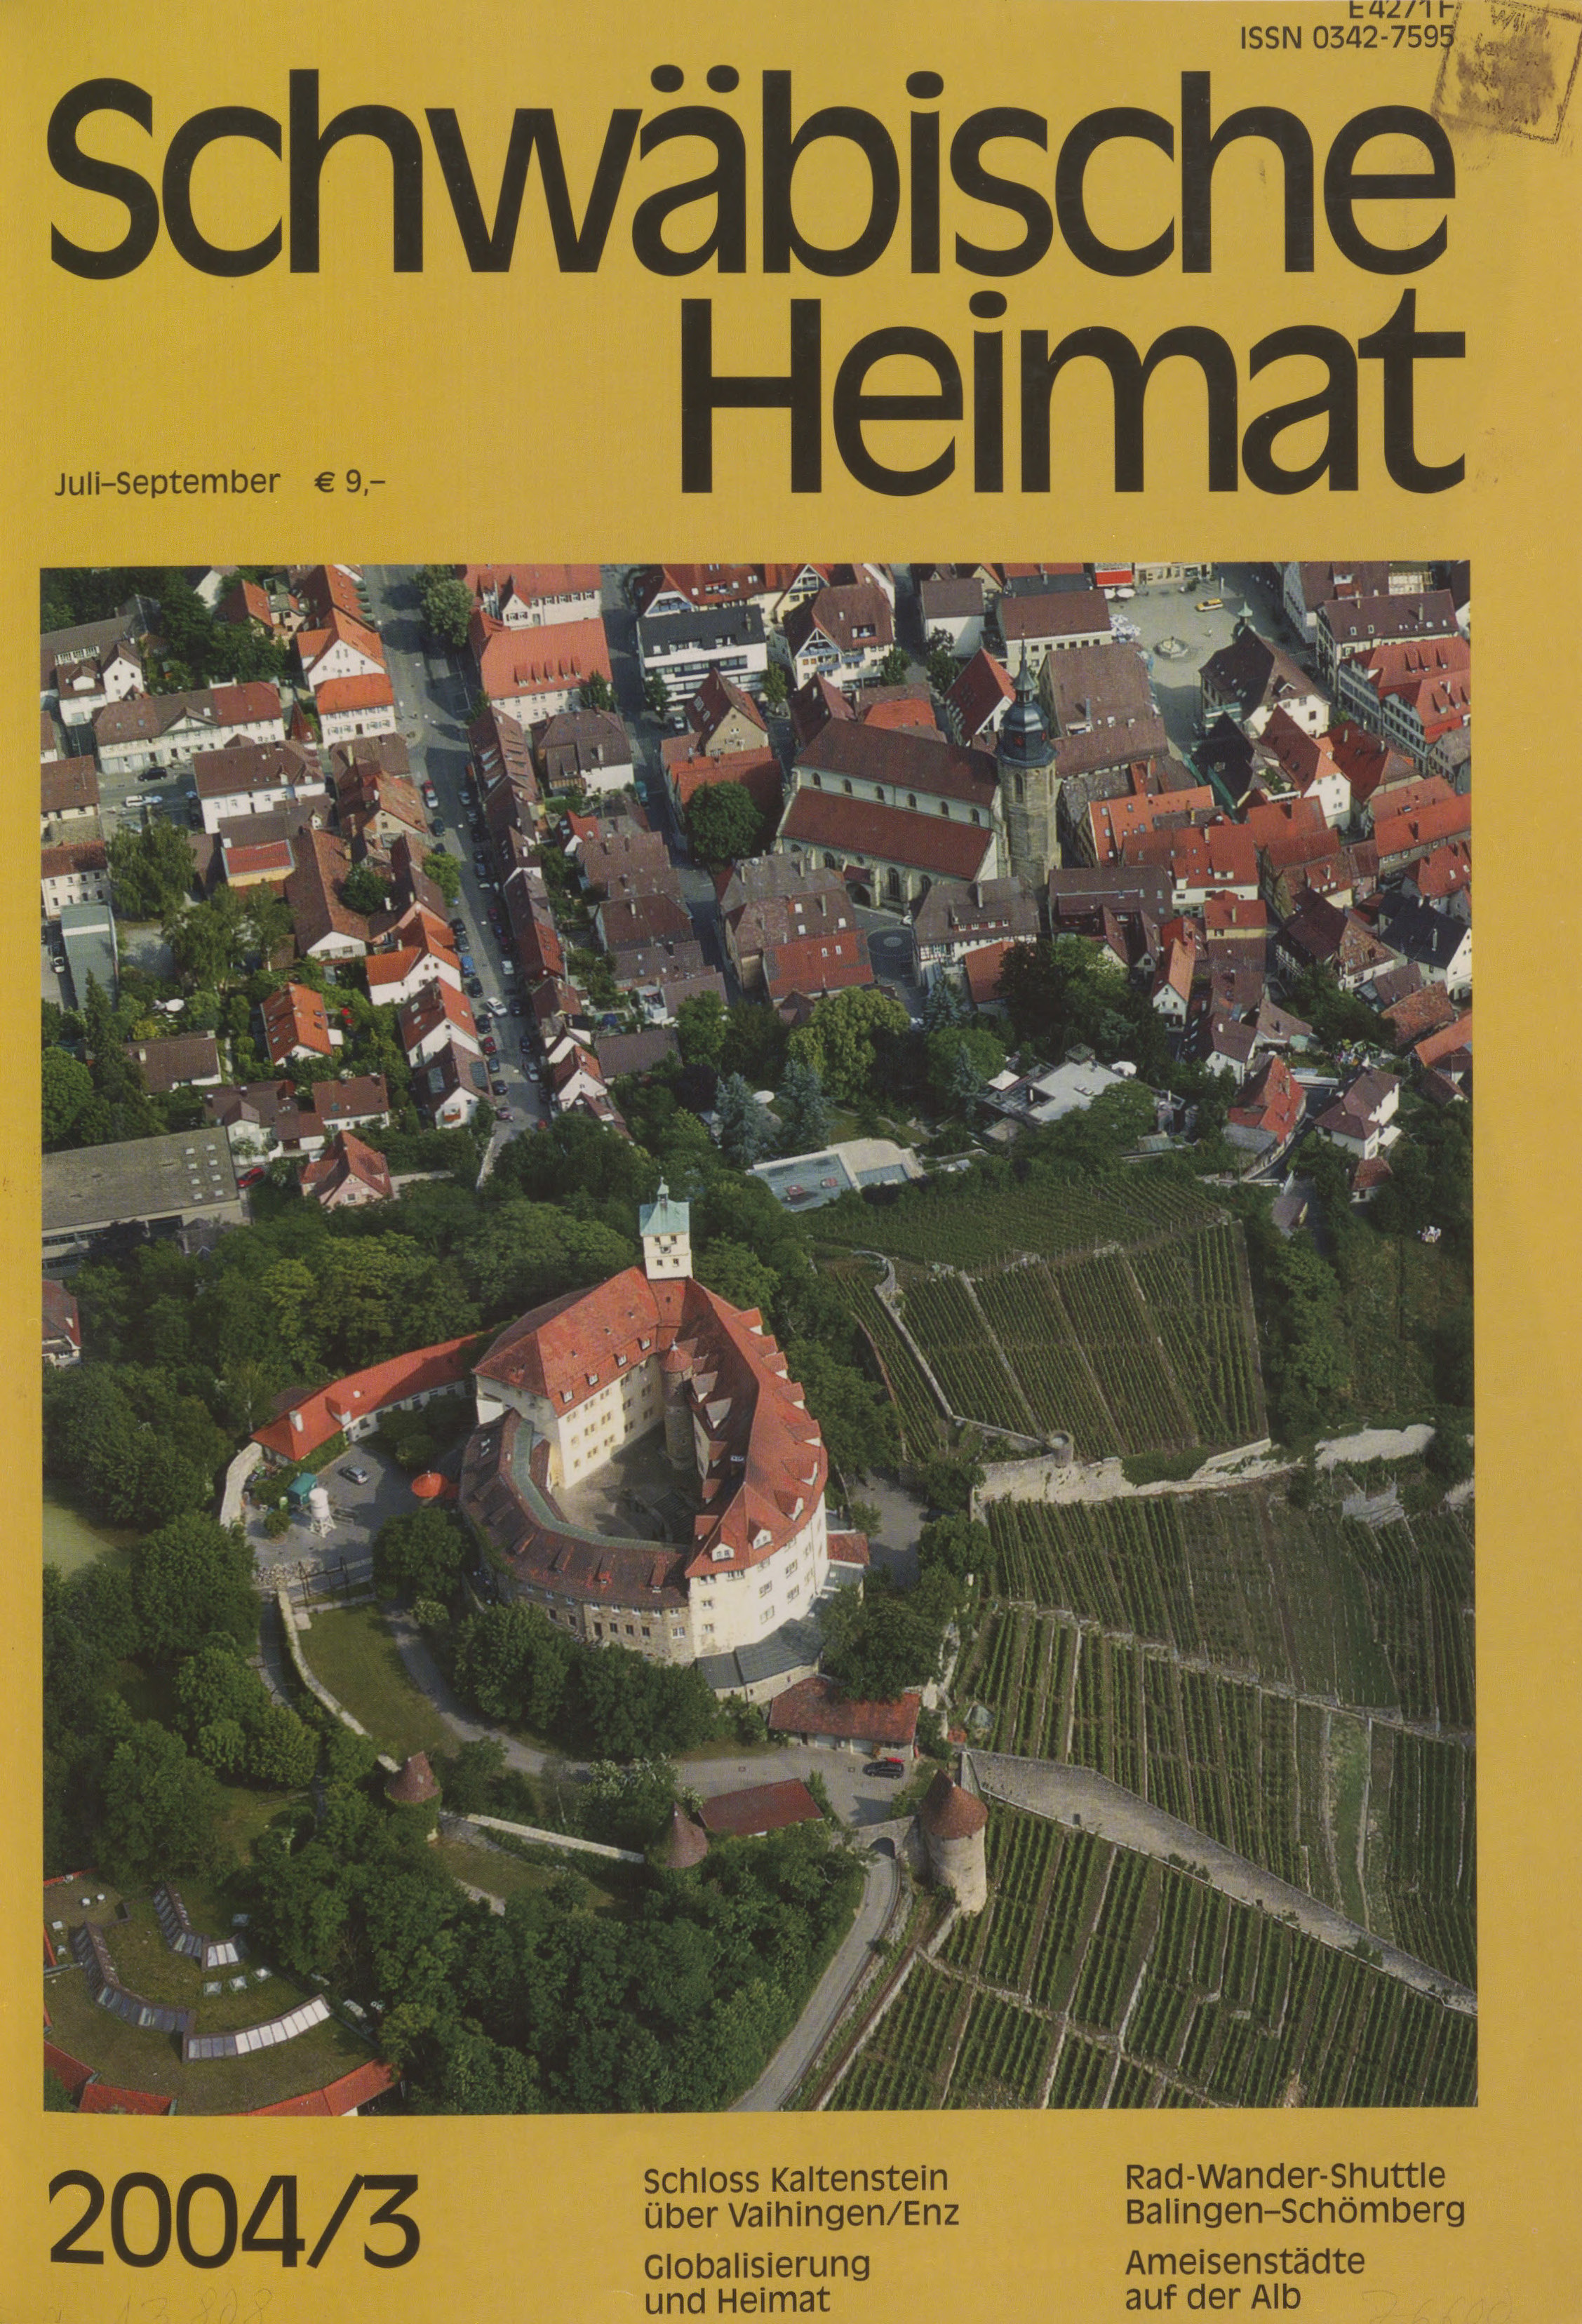                     Ansehen Bd. 55 Nr. 3 (2004): Schwäbische Heimat
                